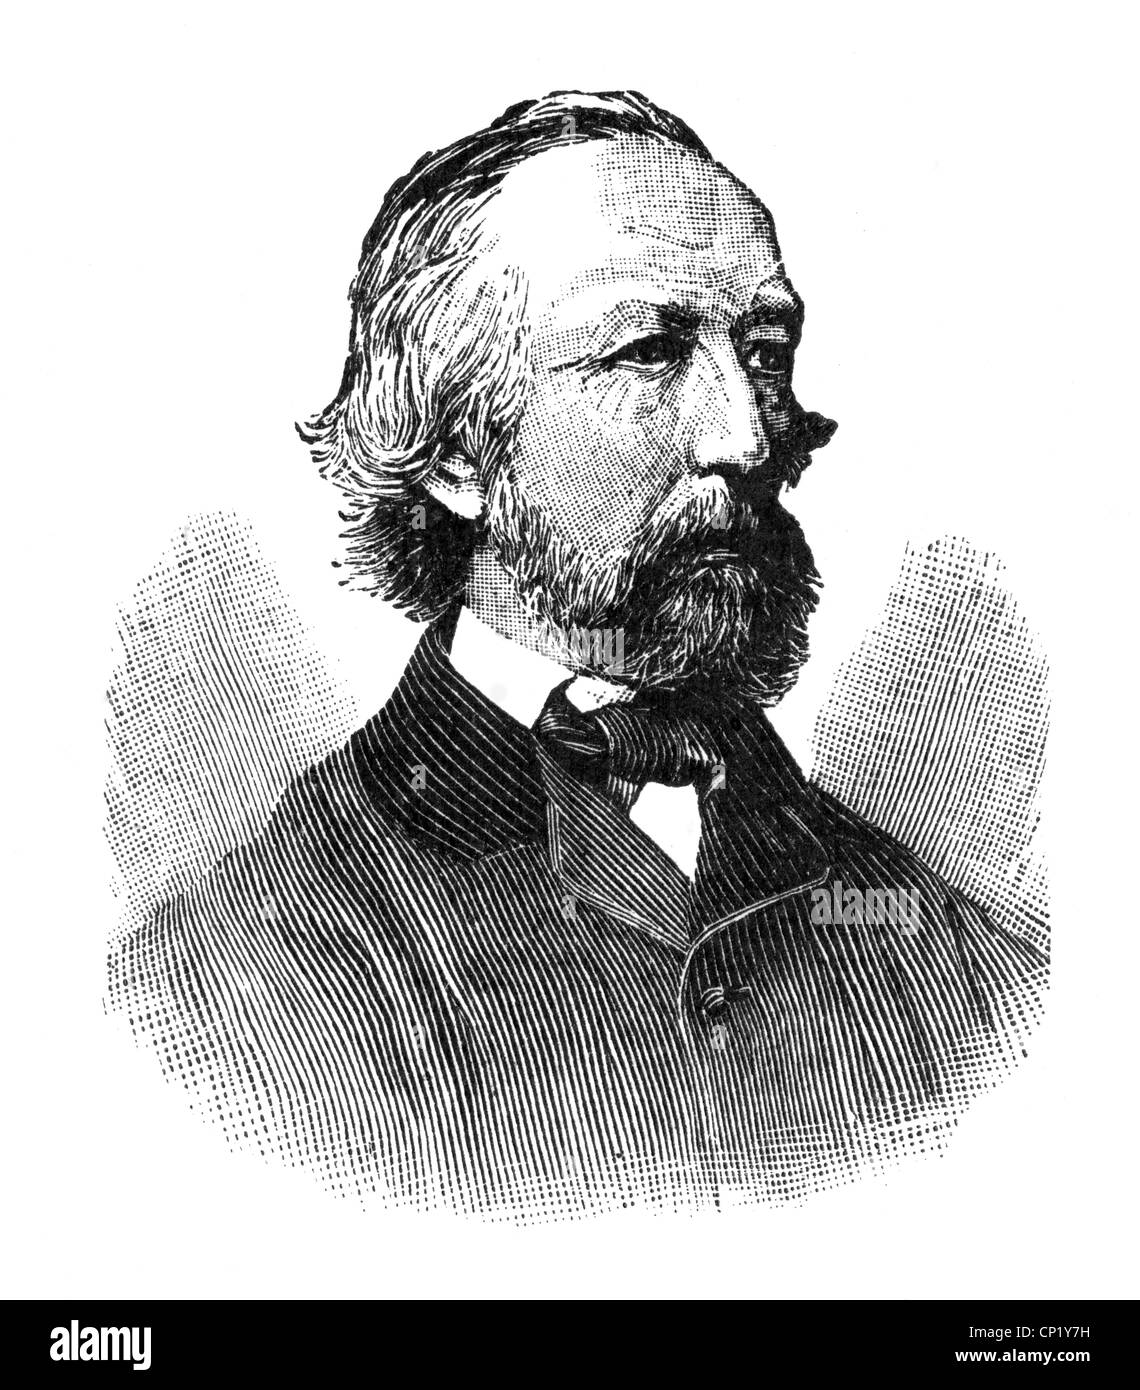 Groth, Klaus, 24.4.1819 - 1.6.1890, autore/scrittore tedesco, ritratto, incisione in legno, circa 1885, Foto Stock